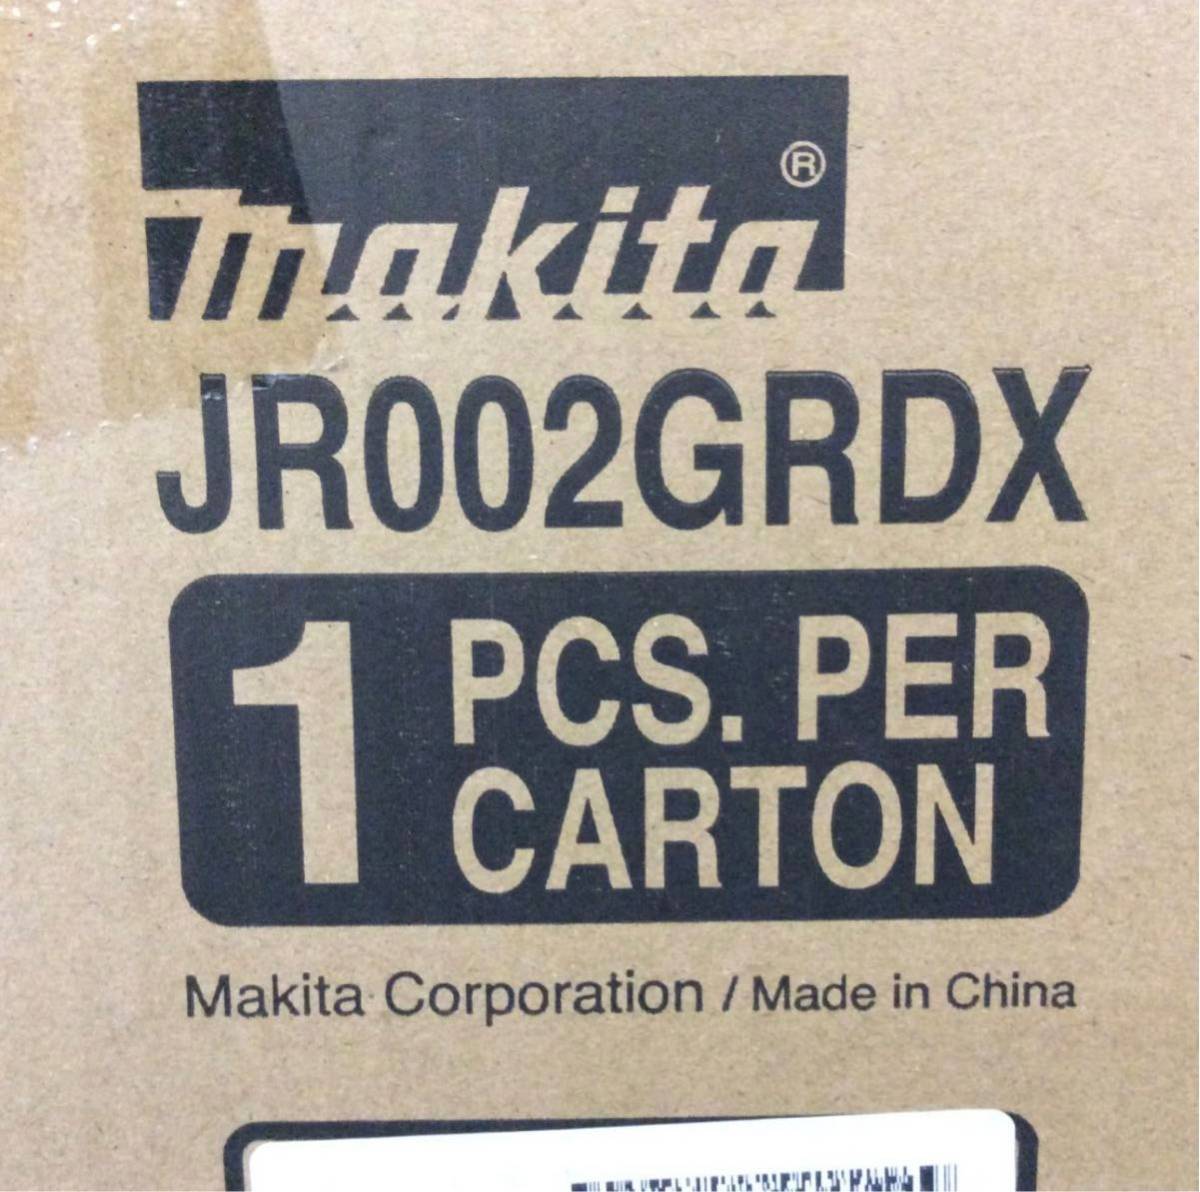 マキタ　新品　充電式レシプロソーJR002GRDX バッテリBL4025×2本・充電器DC40RA・ケース付　送料無料　_画像1